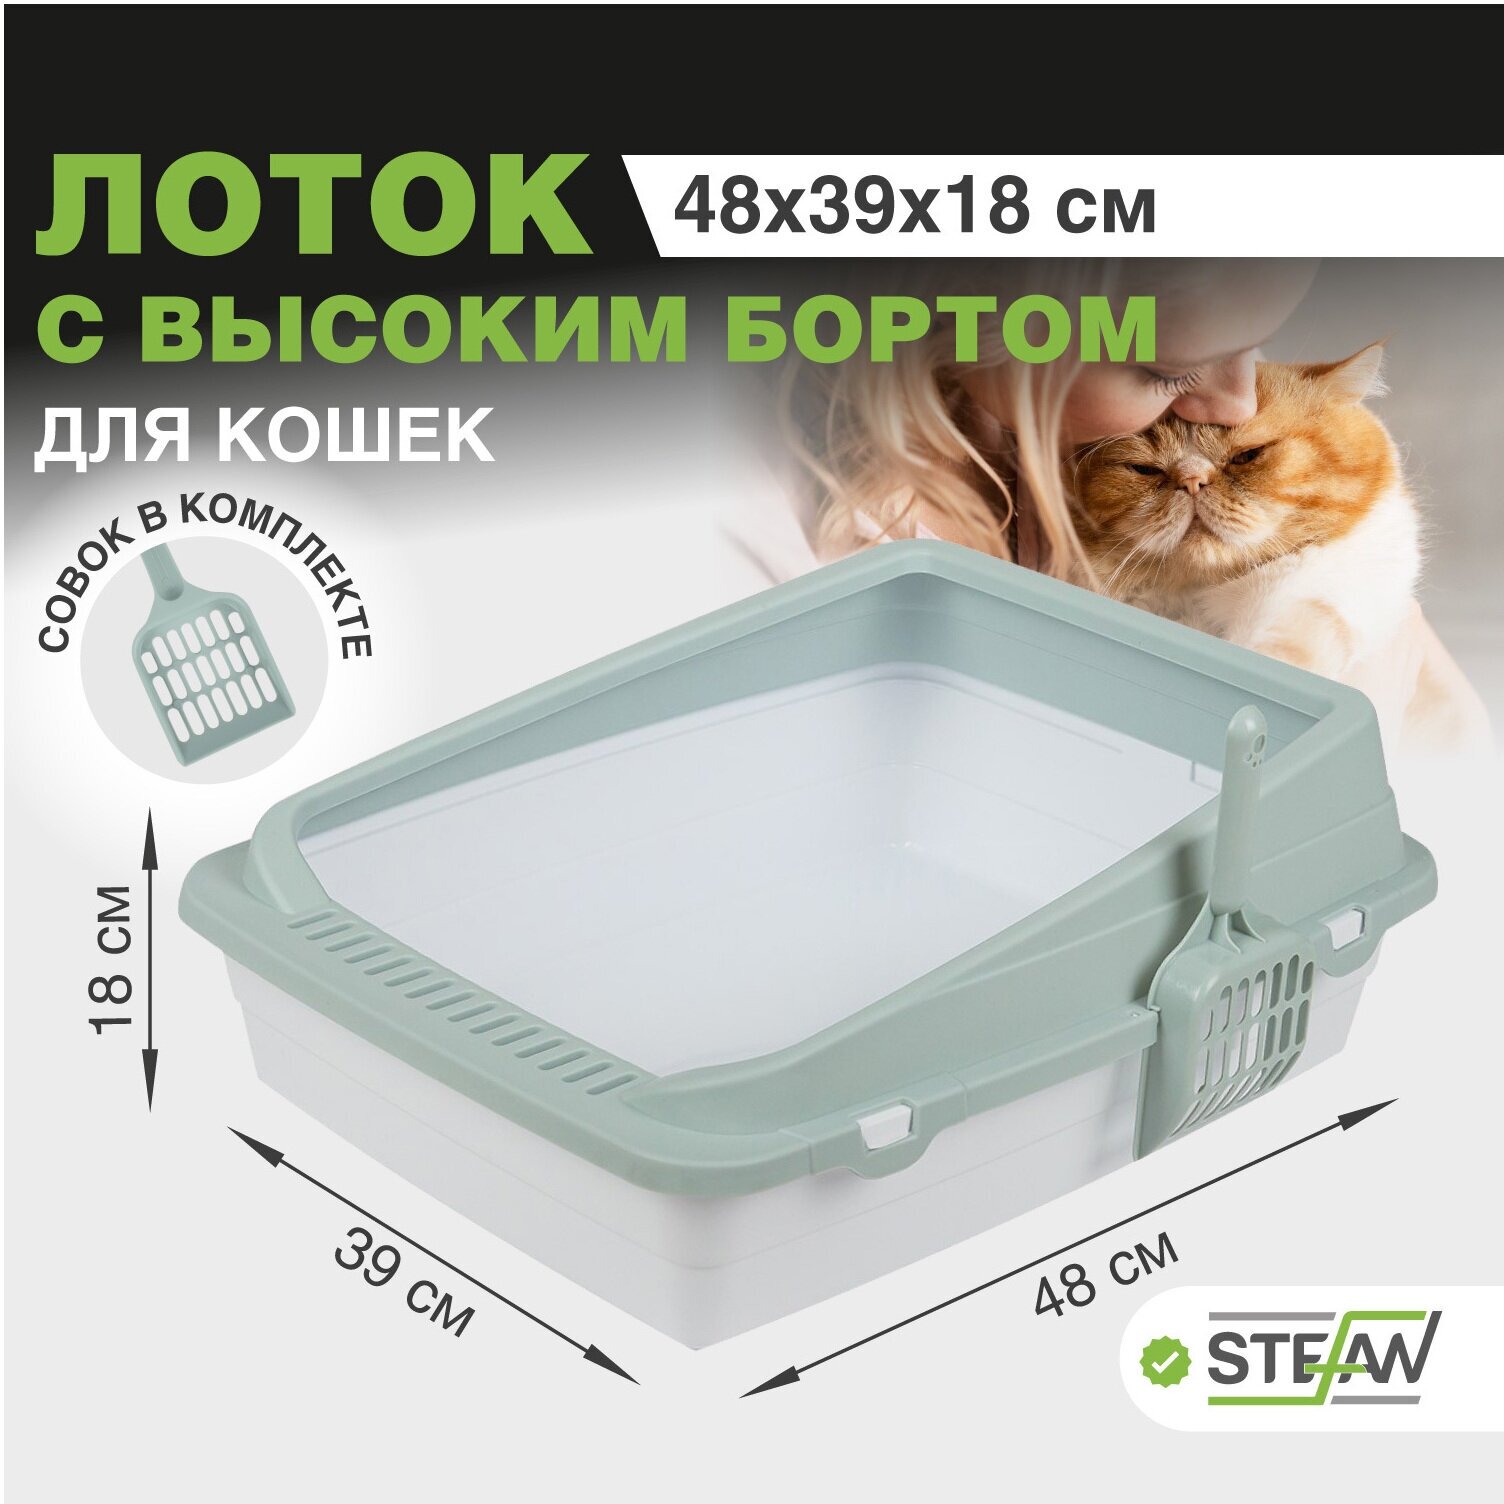 Туалет-лоток для кошек с совком STEFAN, средний (M) — купить в  интернет-магазине по низкой цене на Яндекс Маркете